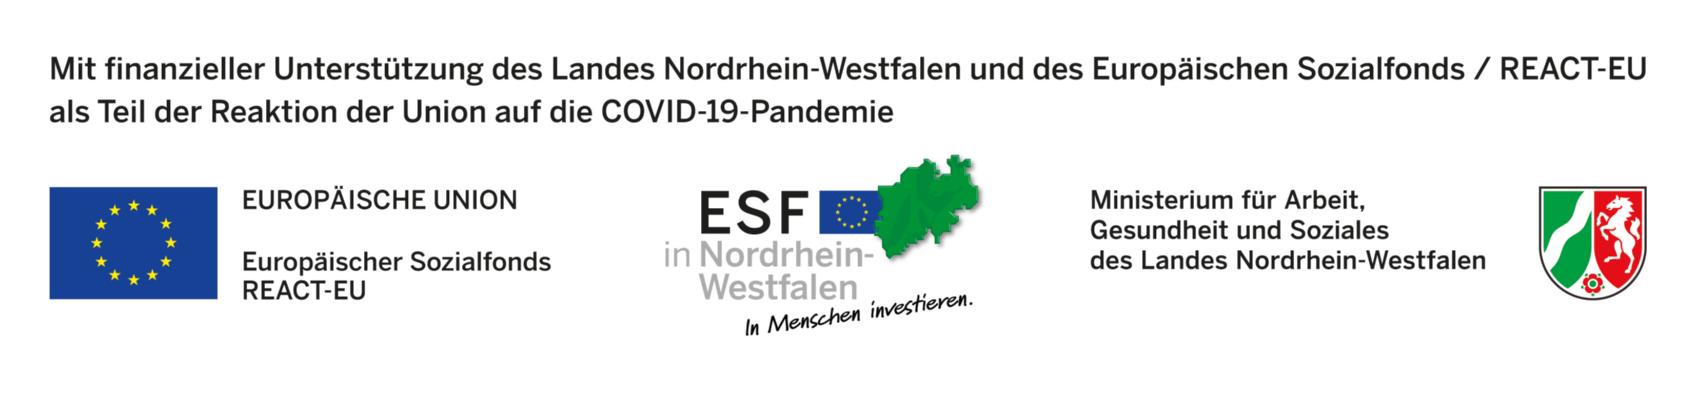 *Die KiTa Christus König erhält finanzielle Unterstützung des Landes Nordrhein-Westfalen und des Europäischen Sozialfonds / REACT-EU als Teil der Reaktion der Union auf die COVID-19-Pandemie (c) MAGS NRW